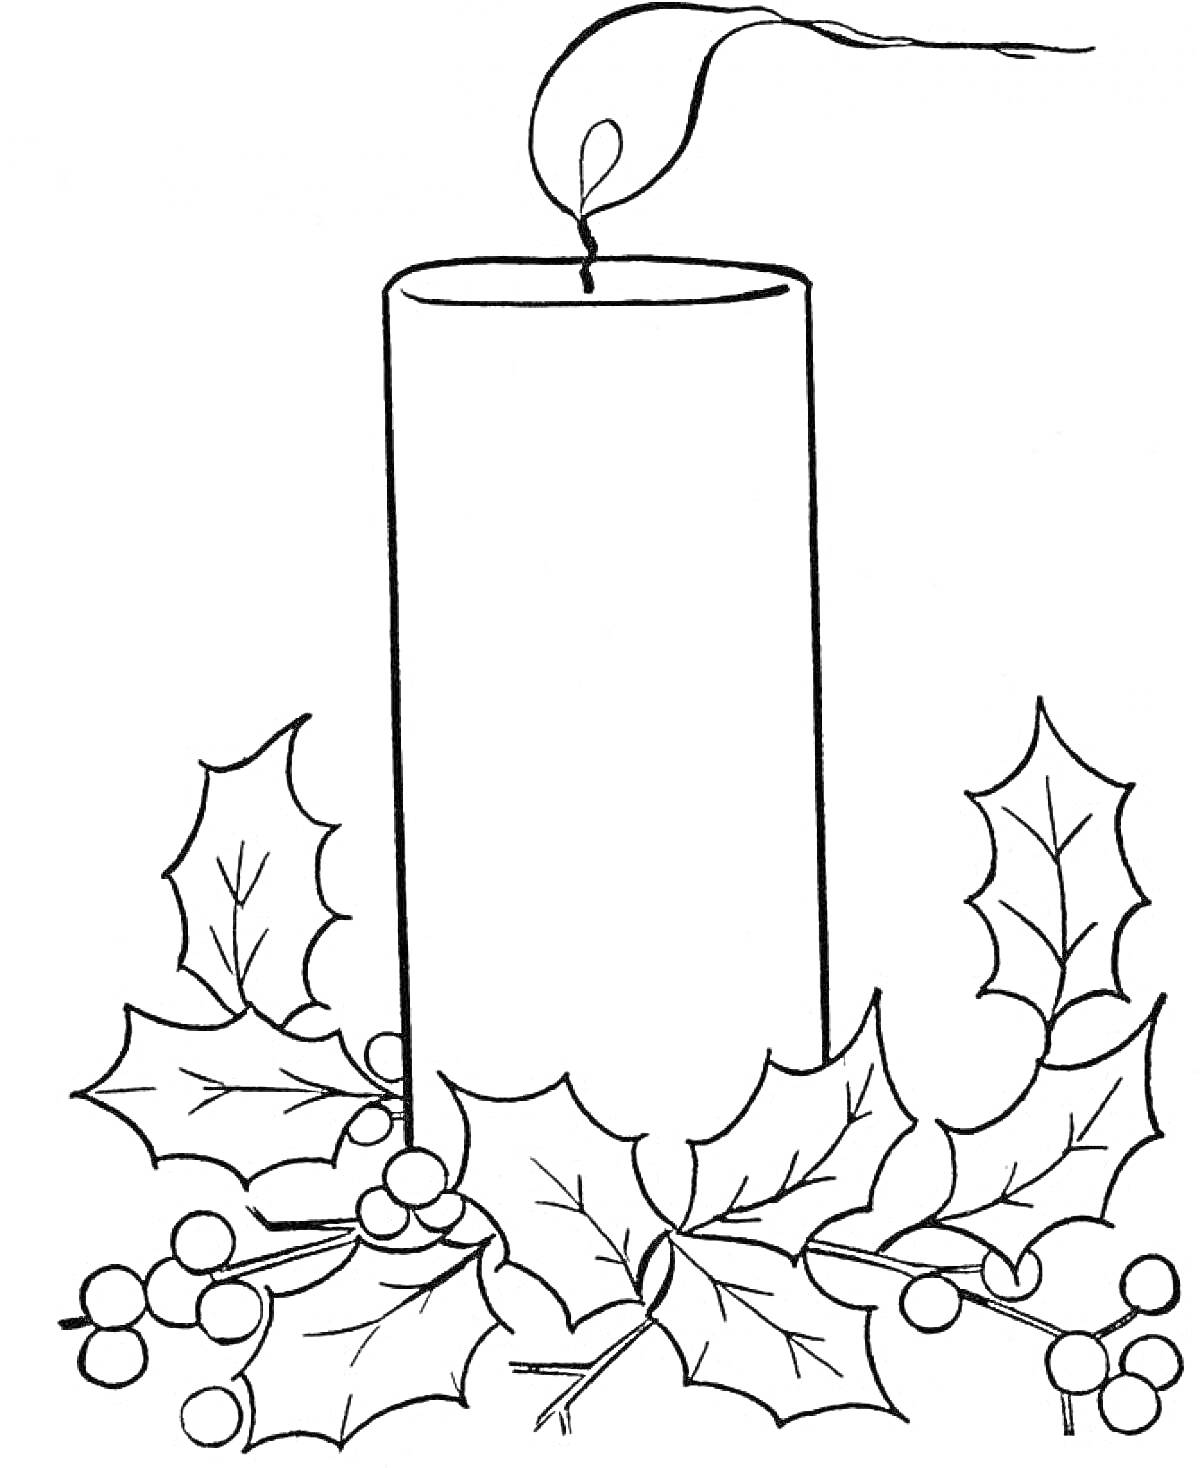 Свеча с тлеющим фитилем, окруженная листьями и ягодами падуба